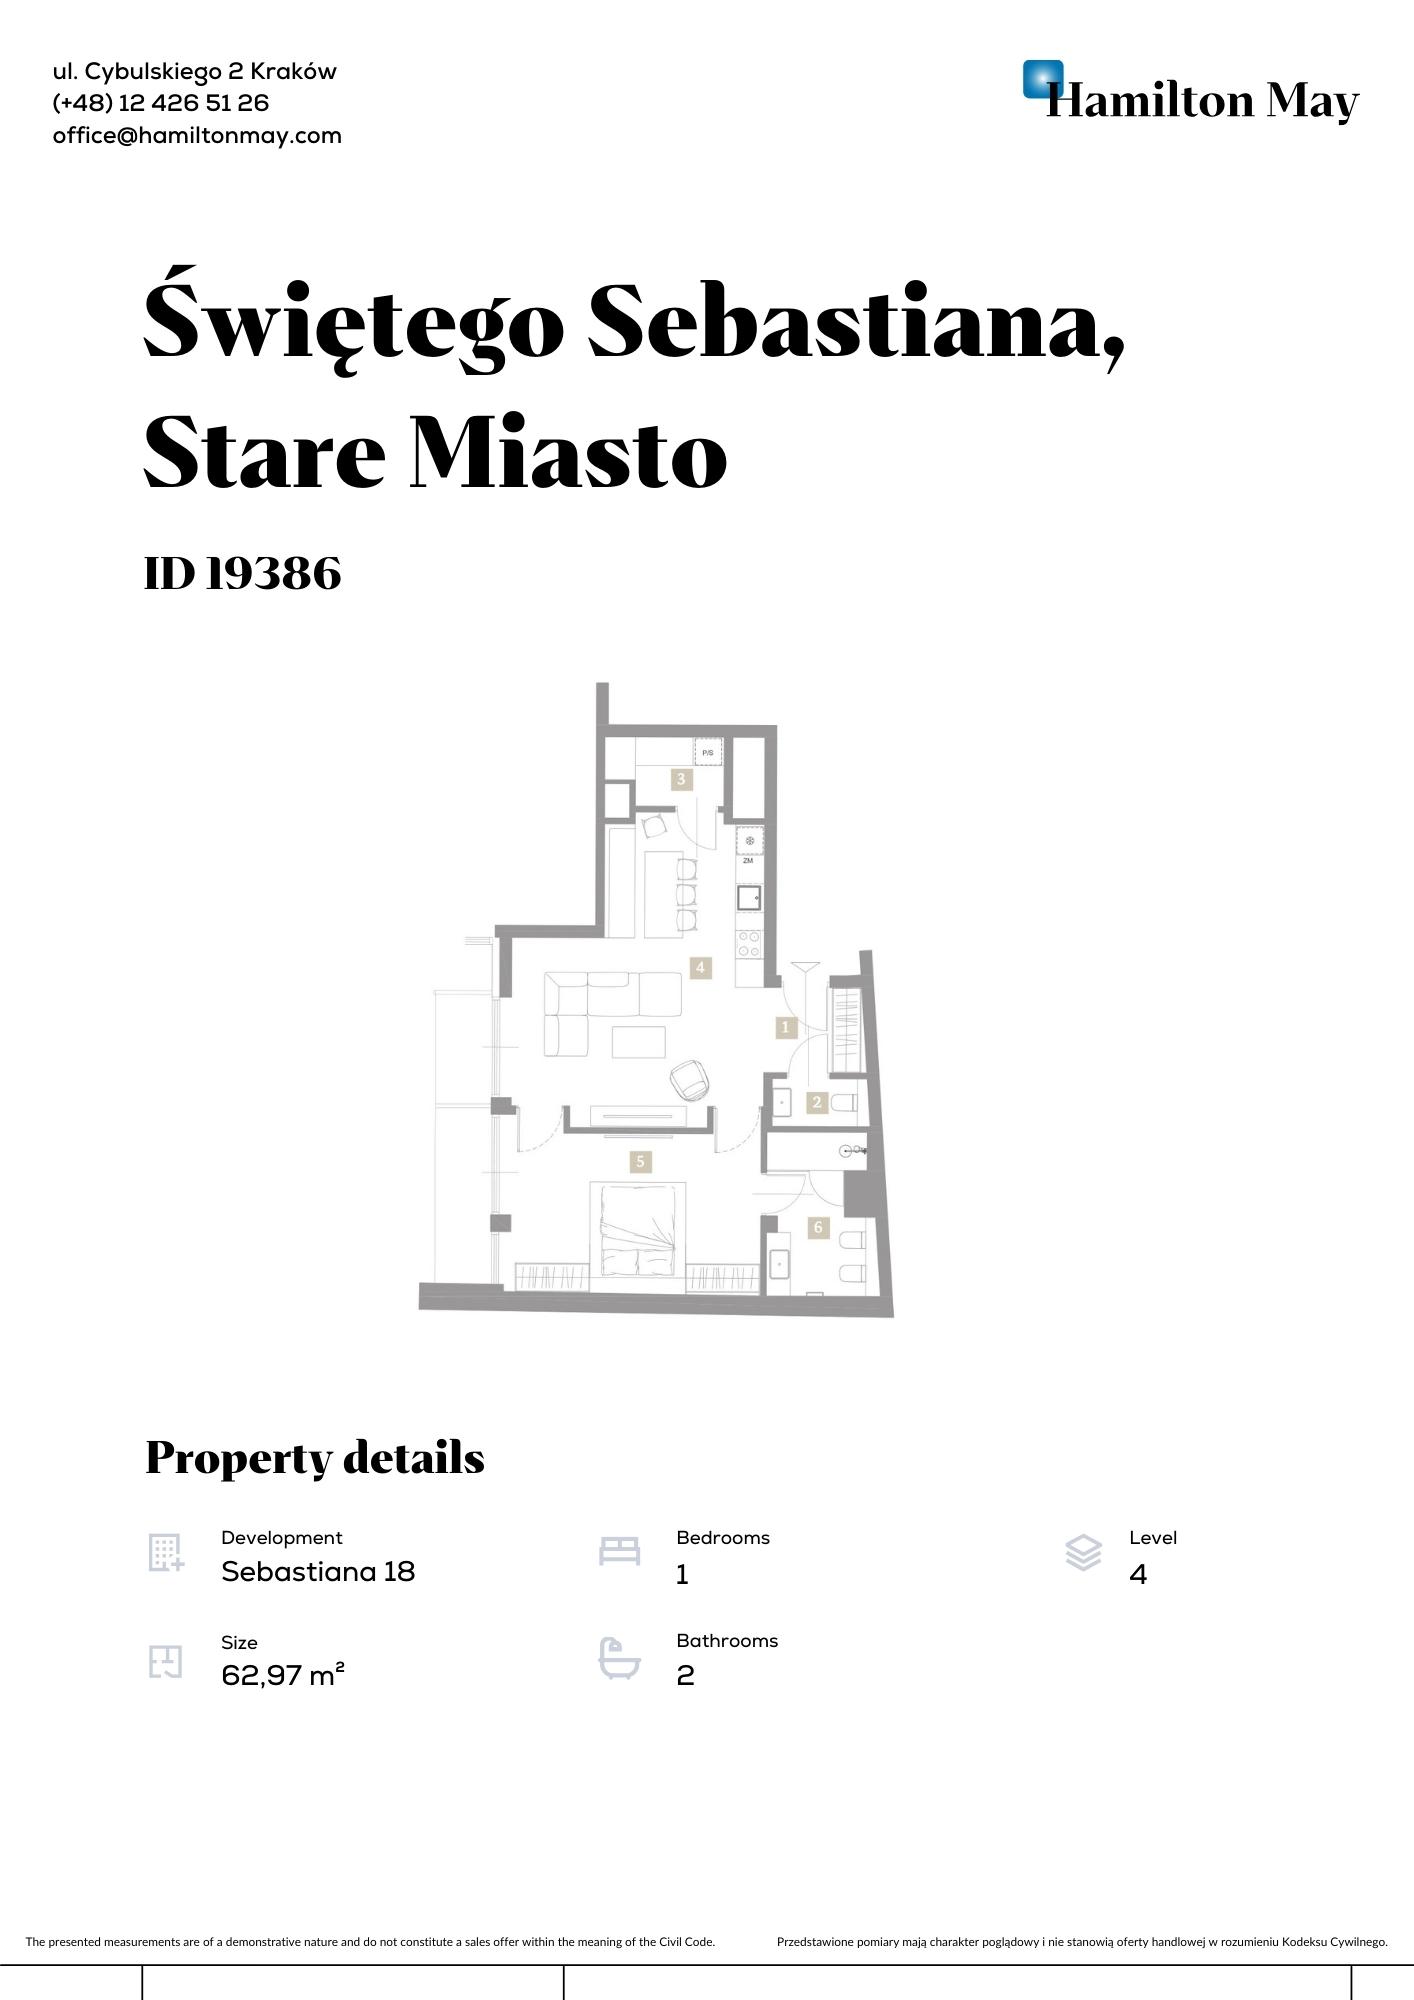 Apartment in the prestigious ivestment at Św. Sebastaiana 18 - plan